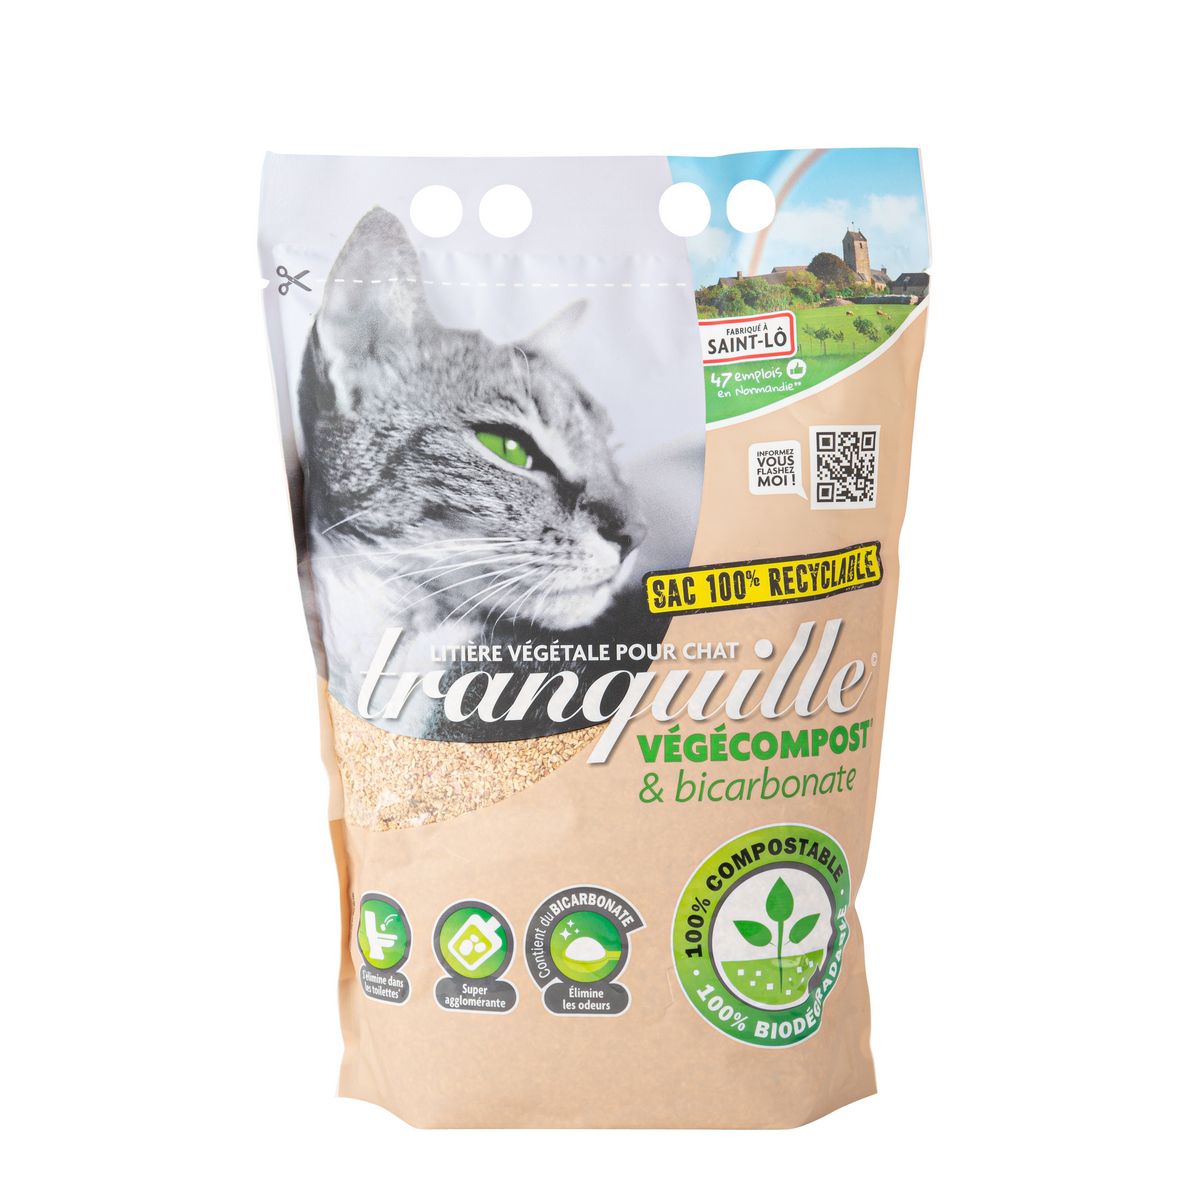 TRANQUILLE Litière végétale végécompost et biocarbonate pour chat 4l